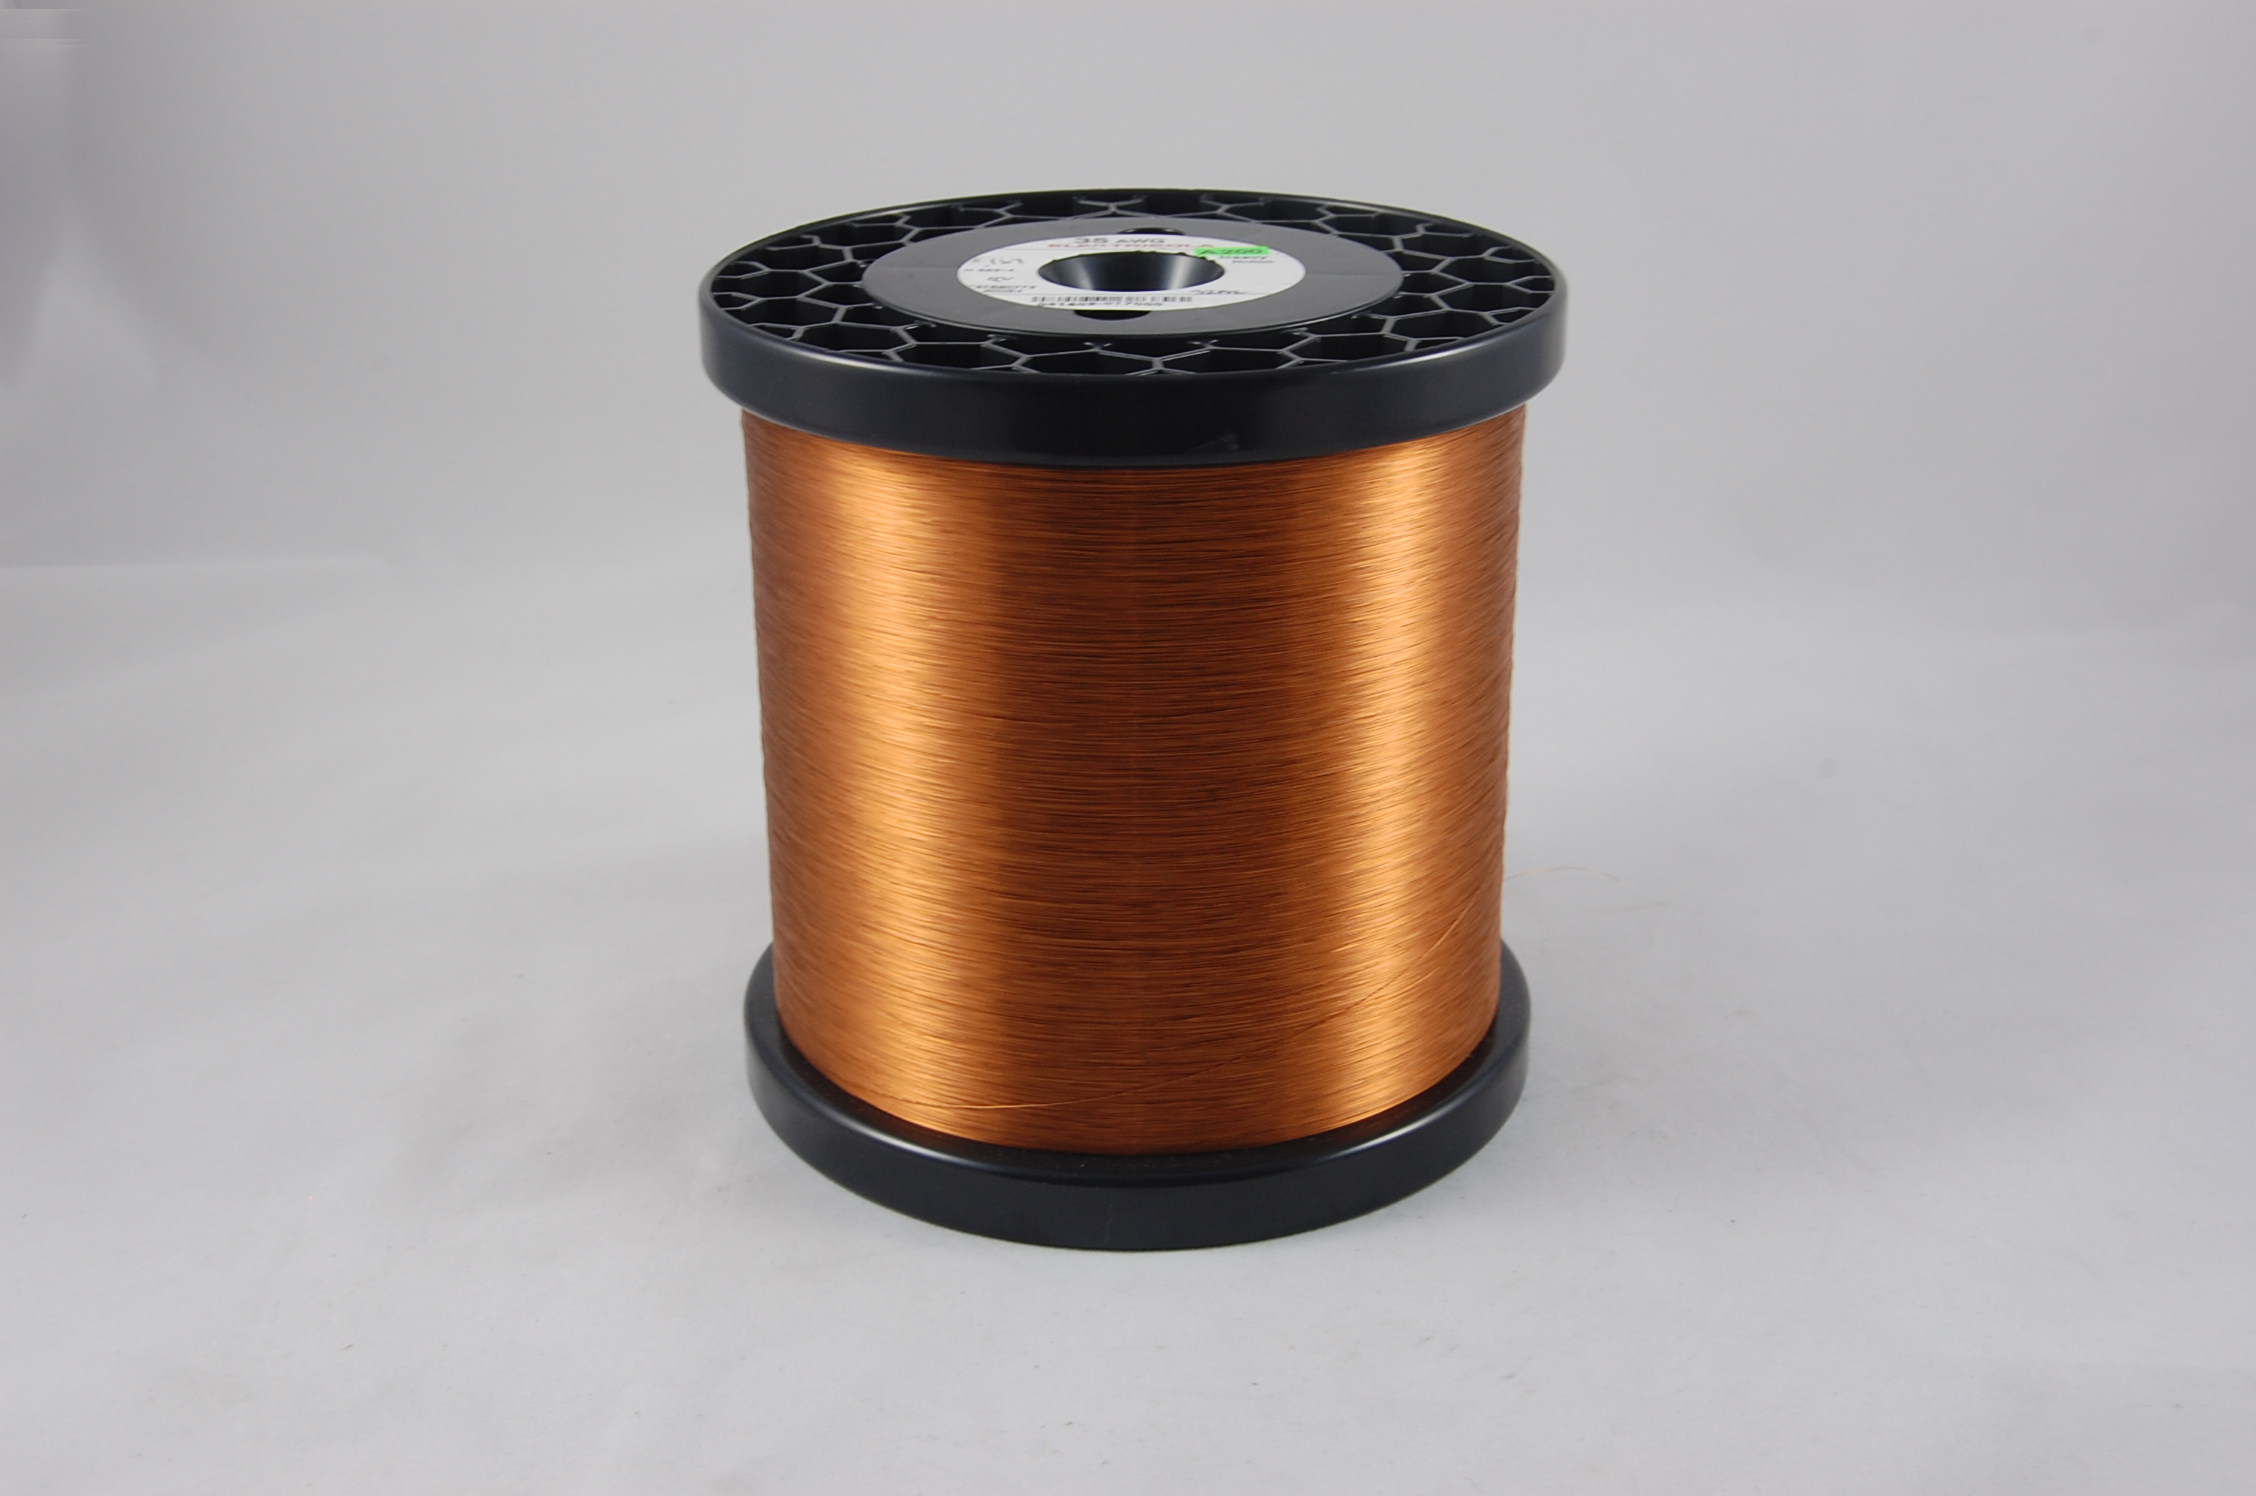 #37 Heavy Amidester 200 Round MW 74 Copper Magnet Wire 200°C, copper,  14 LB 6" x 6" spool (average wght.)